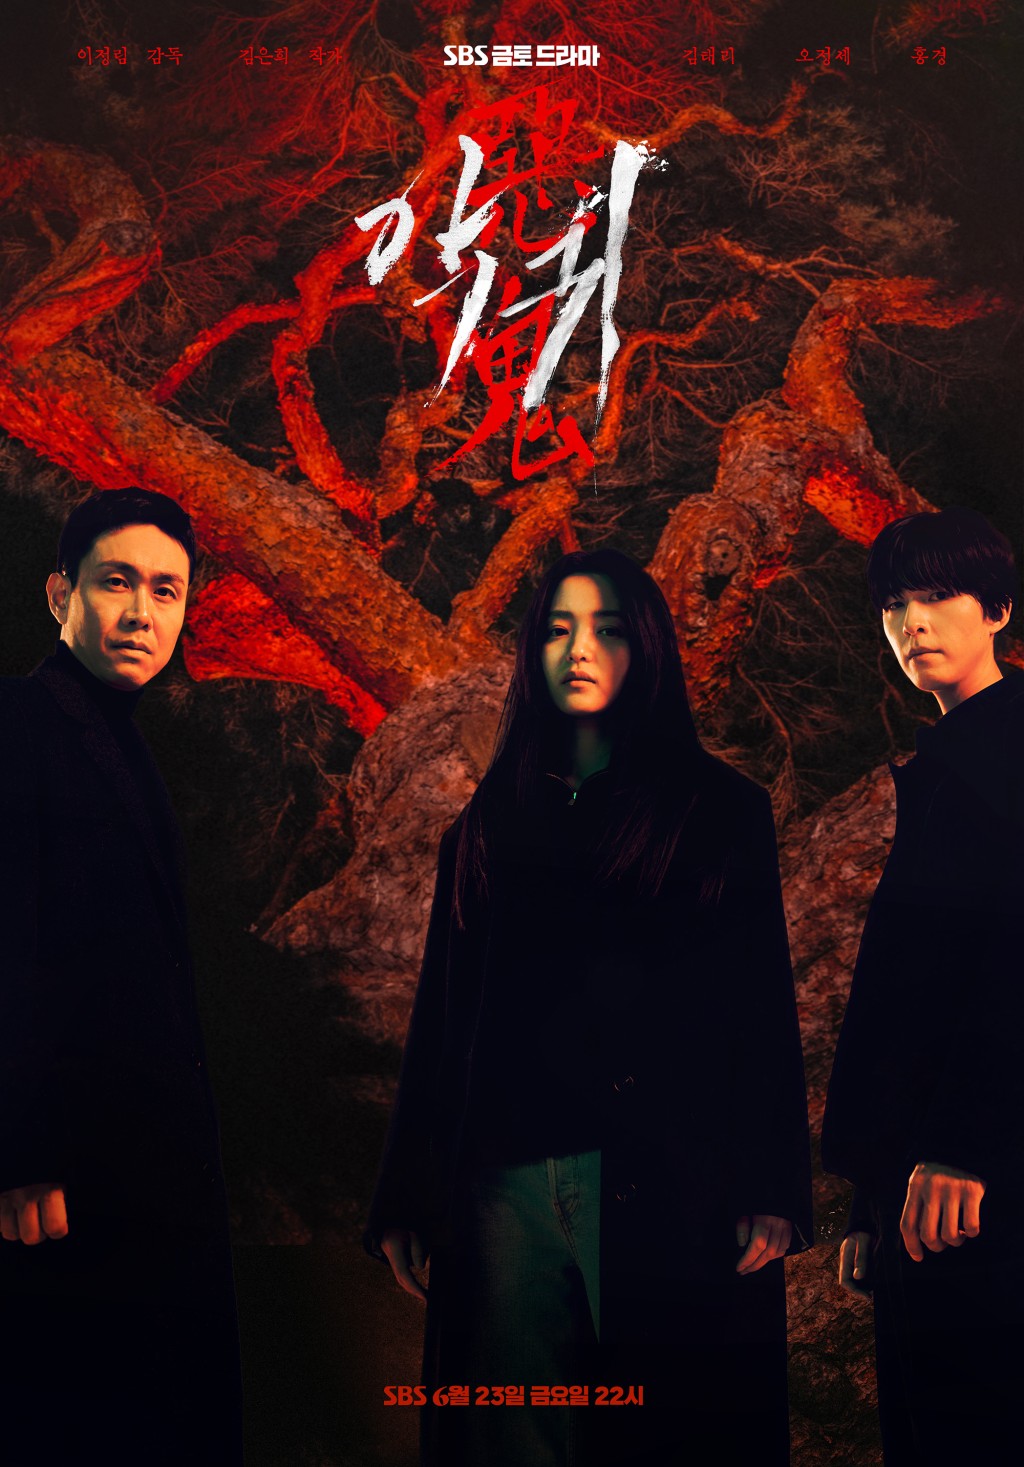 SBS《恶鬼》已于6月23日首播。